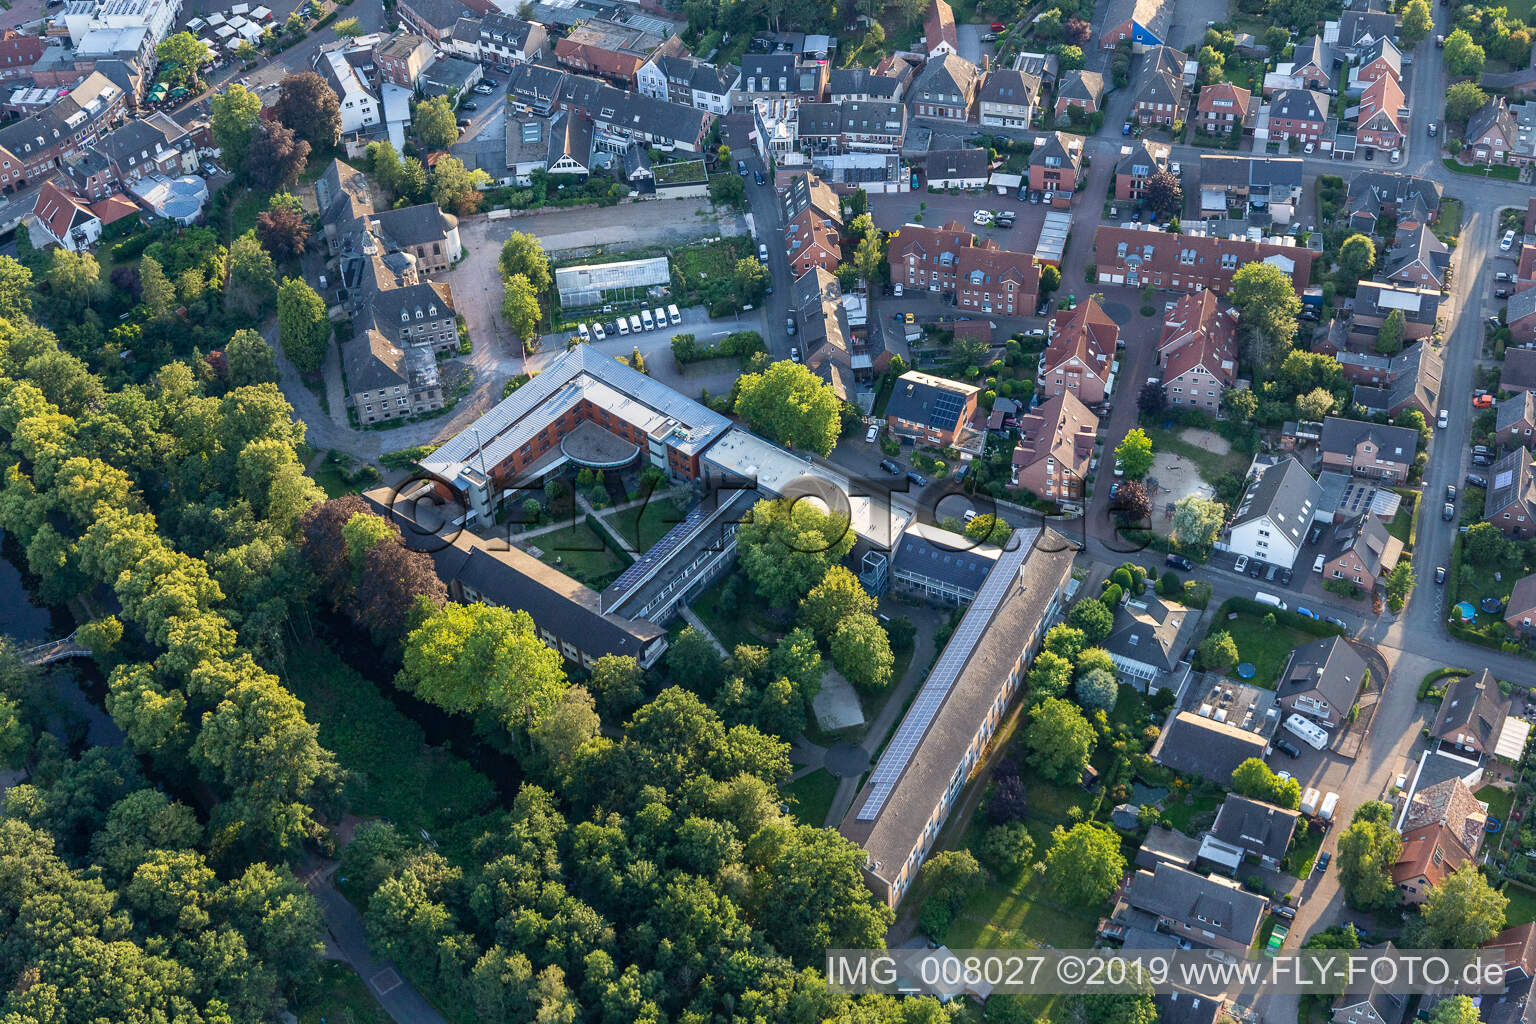 Aerial view of Klausenhof Academy in Rhede in the state North Rhine-Westphalia, Germany